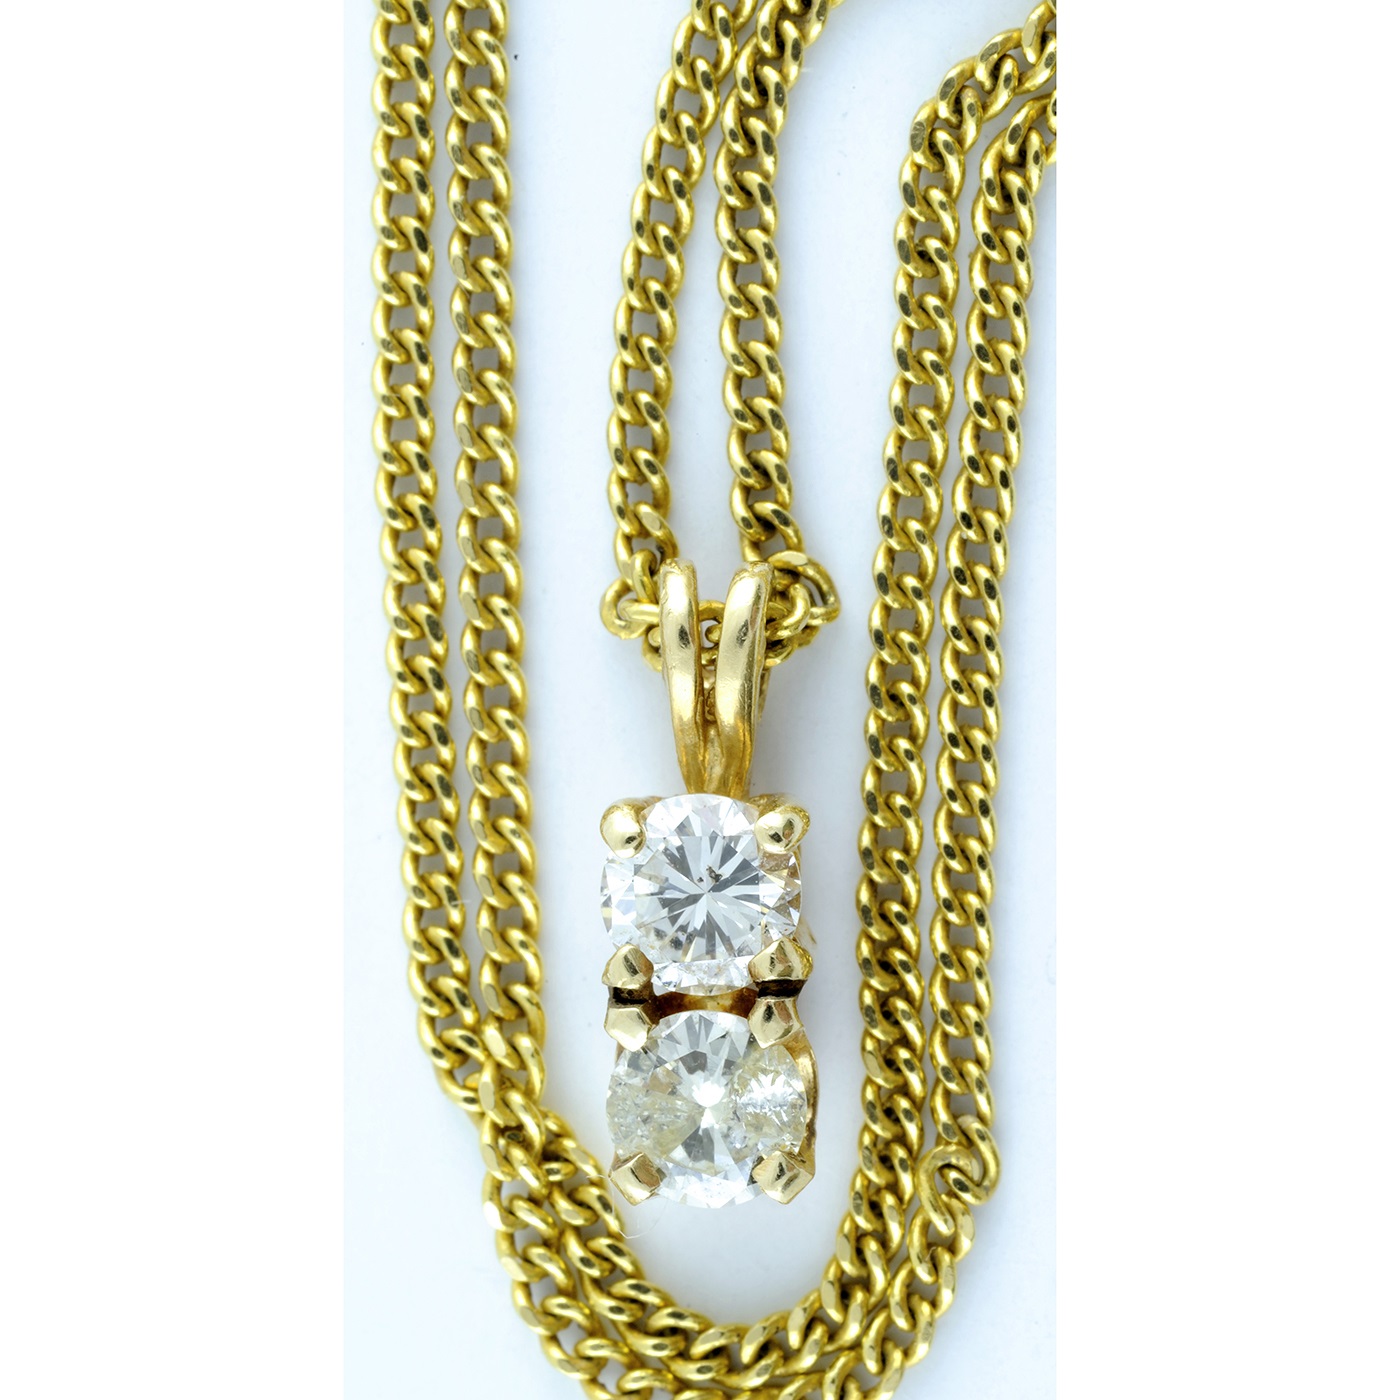 Gargantilla en Oro de 18k con Colgante con dos Diamantes Naturales, talla Brillante, de 0,48 ct. Color K-L. Pureza SI1.